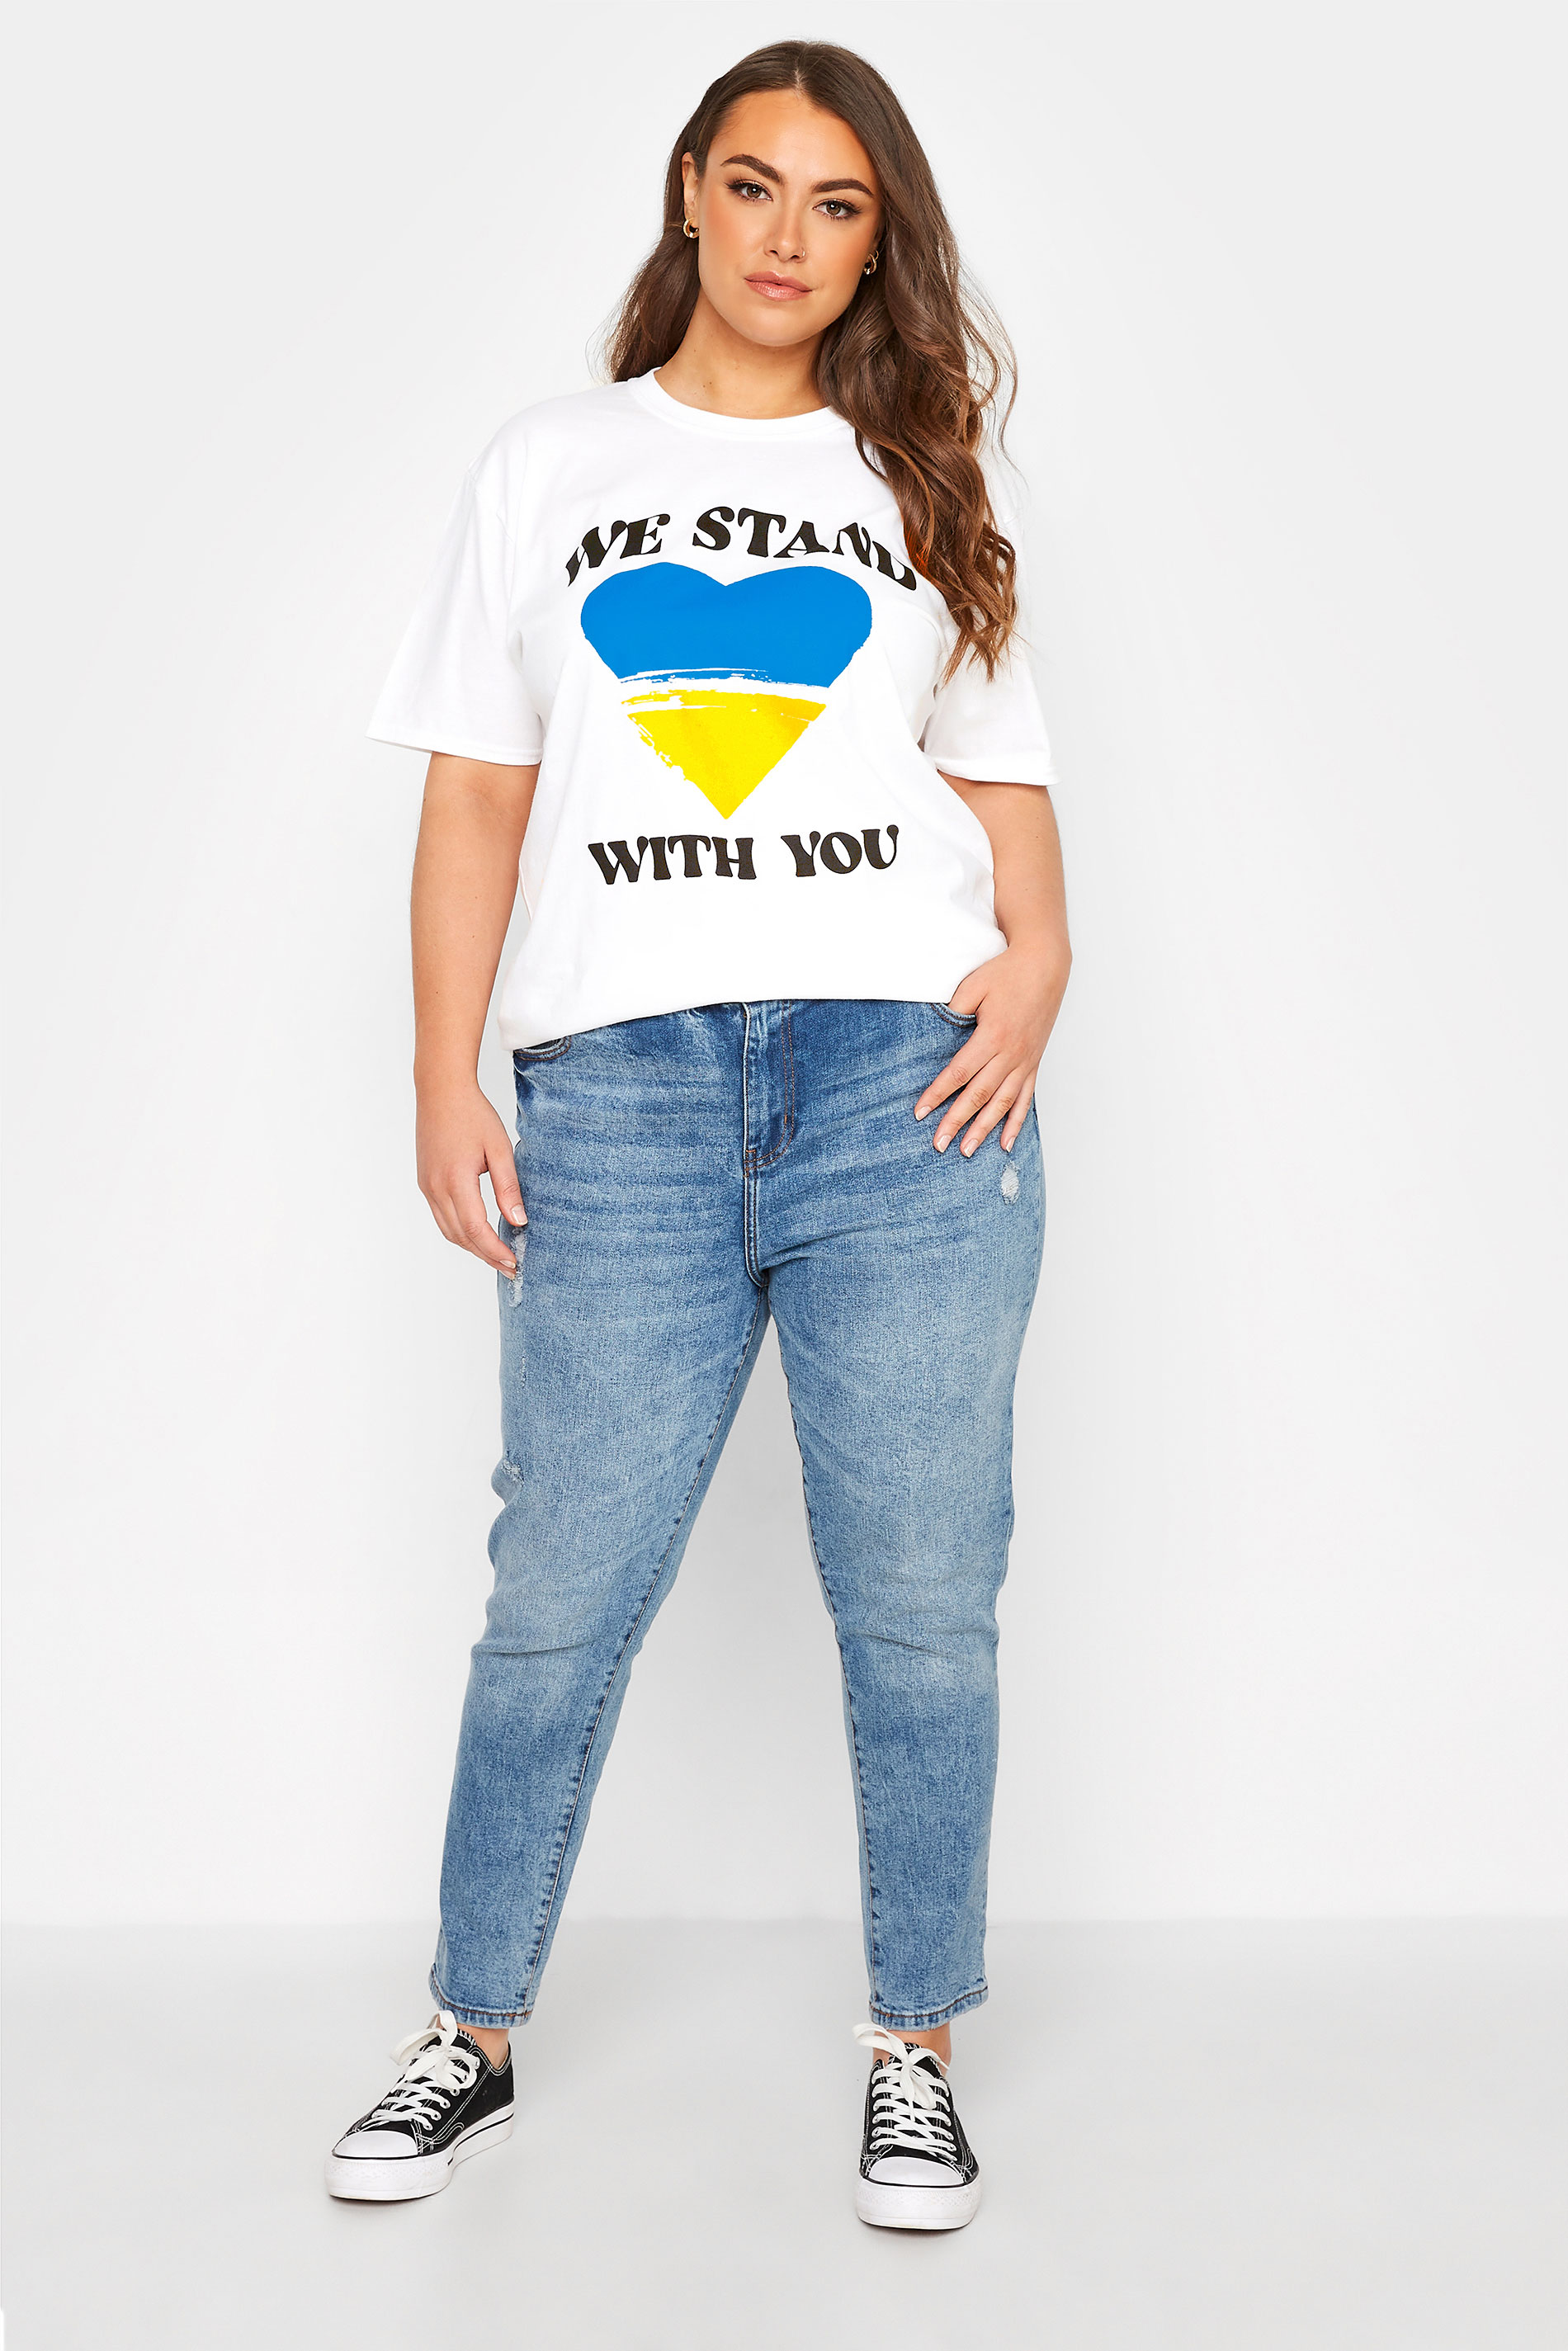 Grande taille  Tops Grande taille  T-Shirts | T-Shirt We Stand With You 100% des dons en soutien à la crise Ukrainienne - KP05182